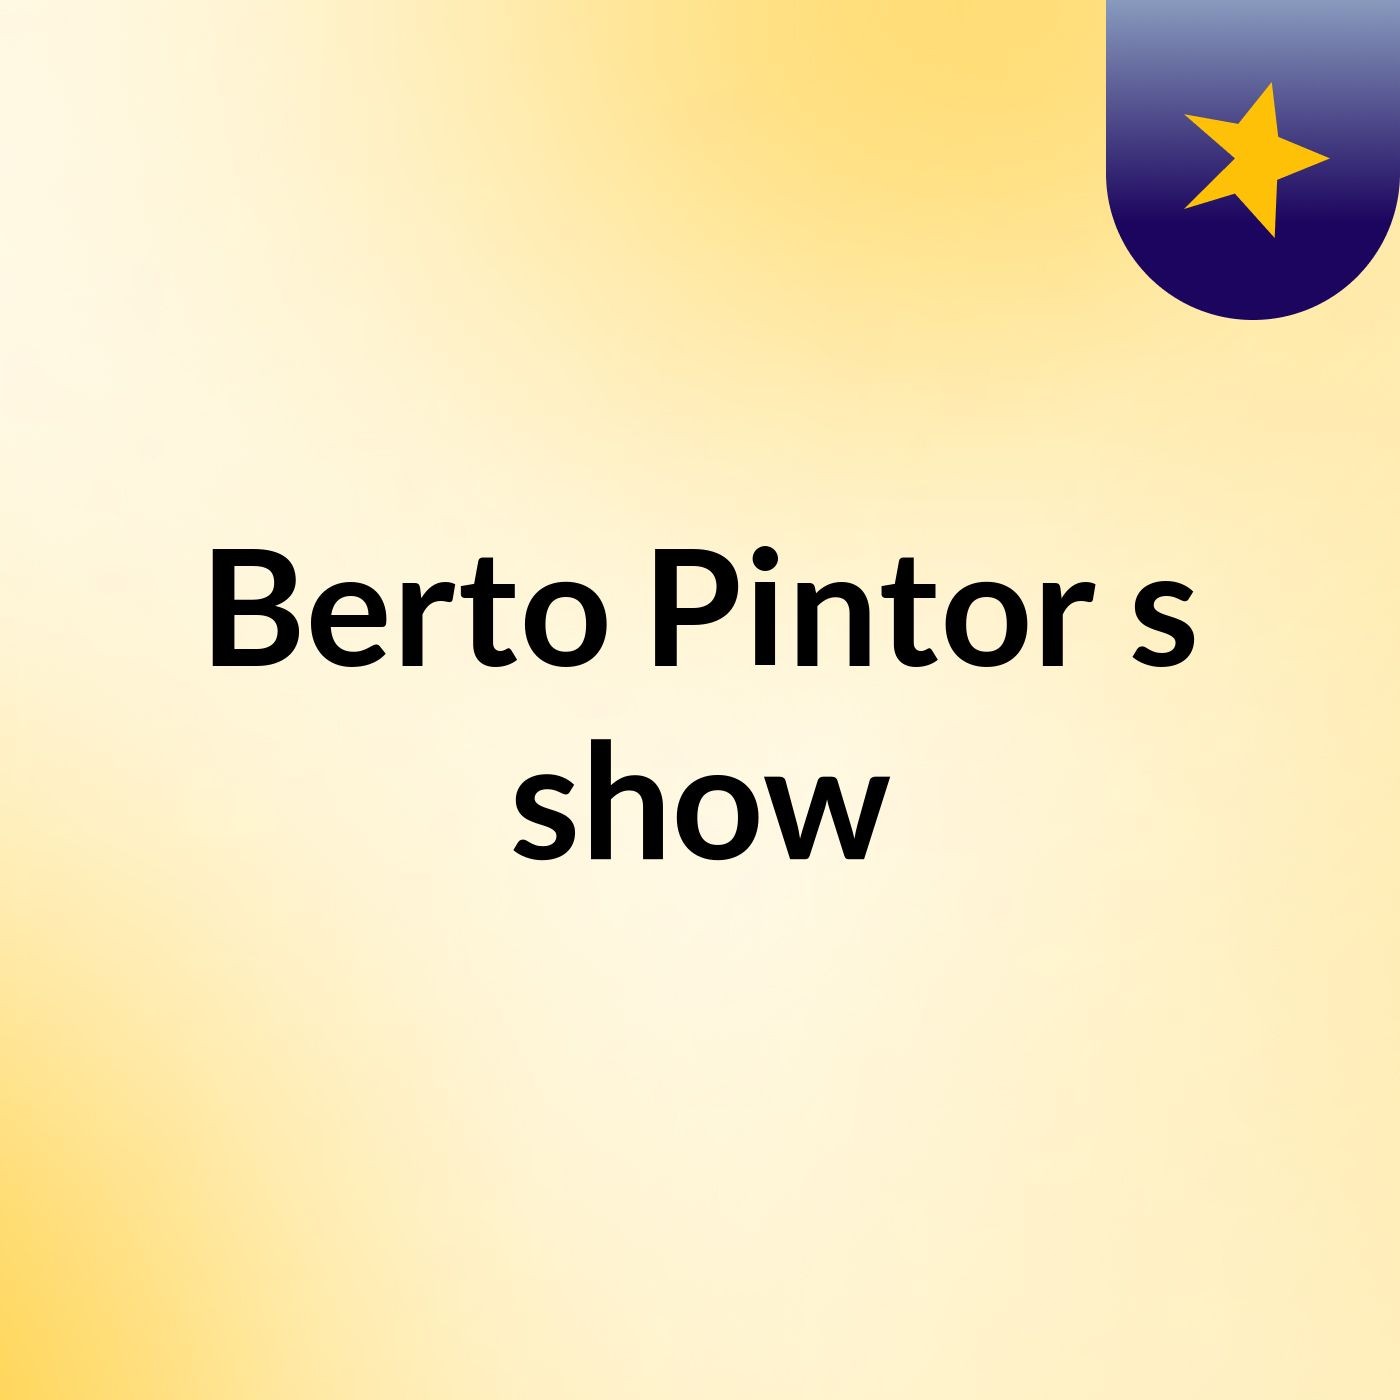 Berto Pintor's show